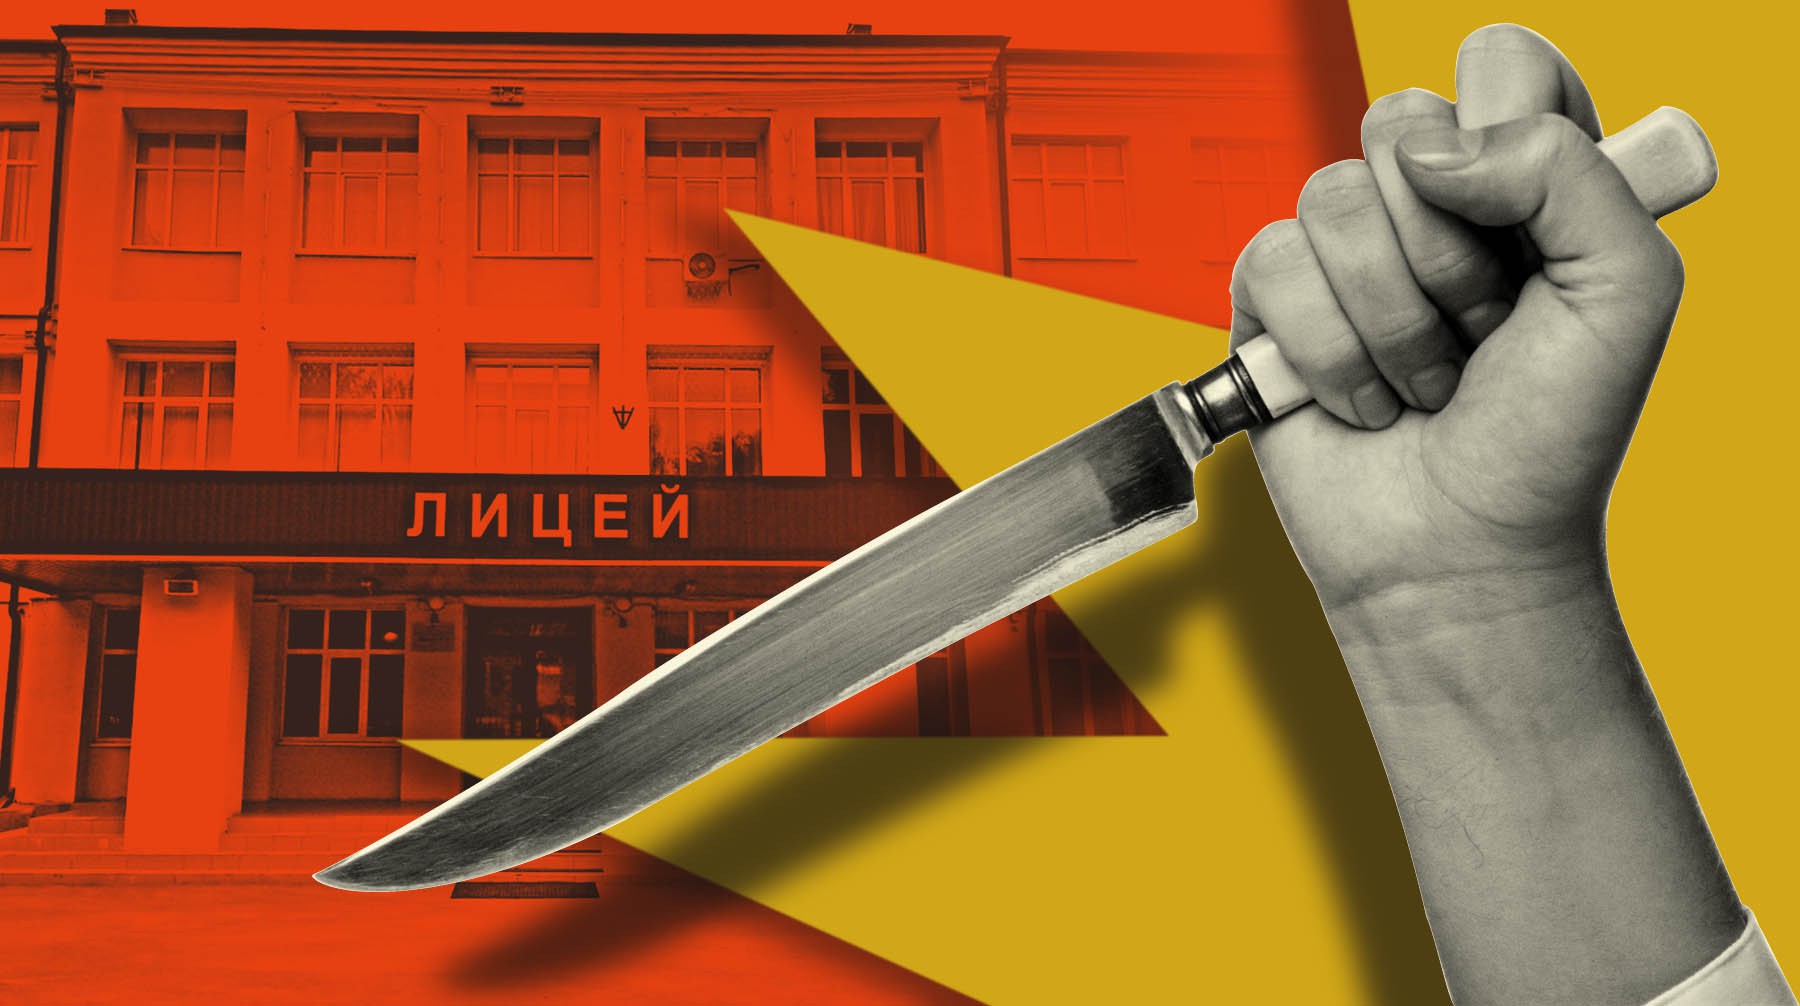 Dailystorm - Лицеист ранил ножом преподавателя в Пермском крае